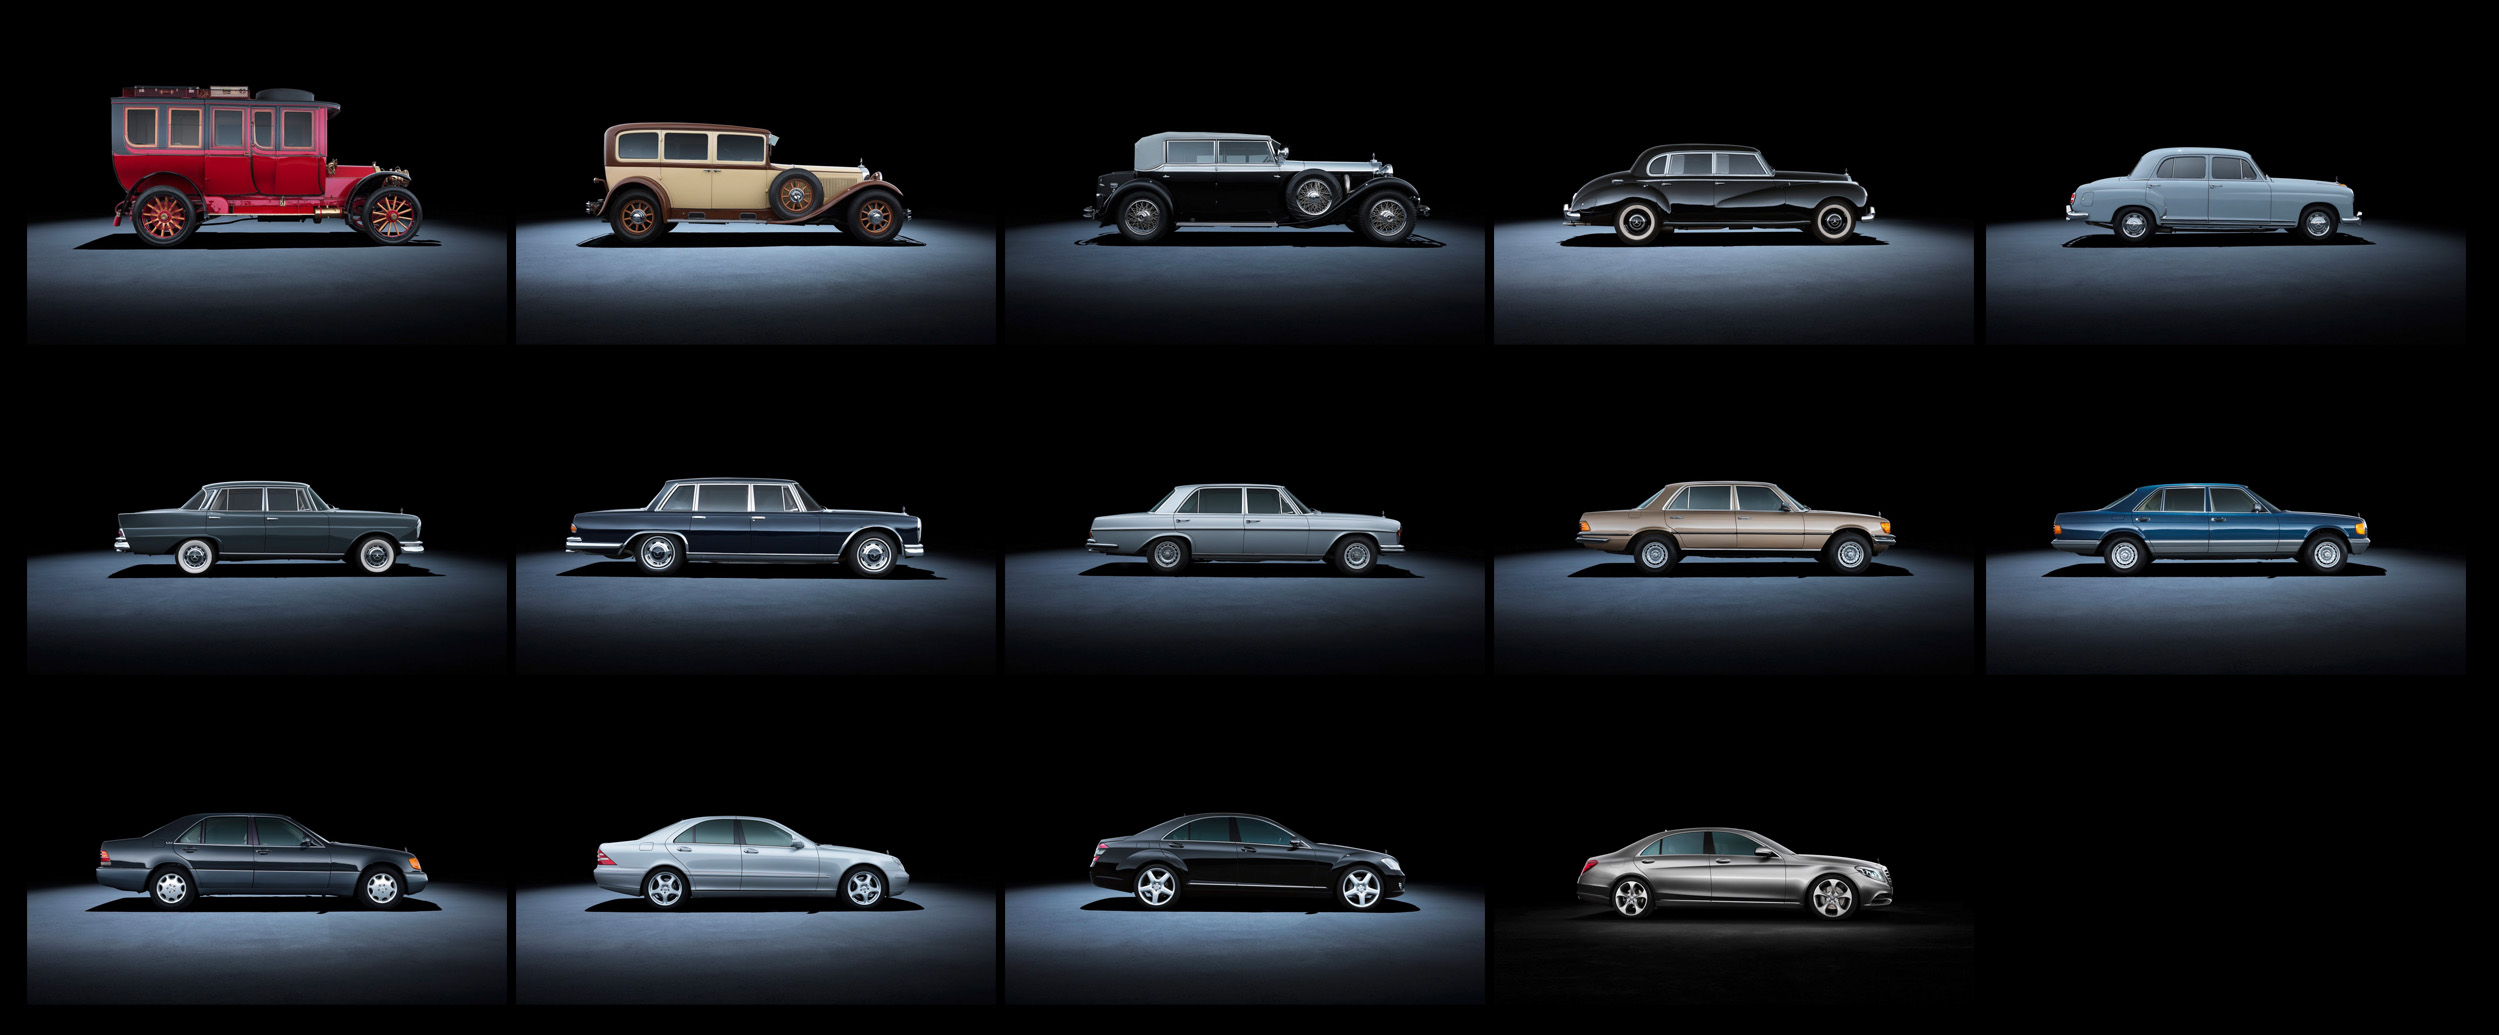 Как менялся мерседес. S class Мерседес поколение. Эволюция Мерседес Бенц s класс. Кузова Мерседес s класса по годам. Mercedes s class Evolution.